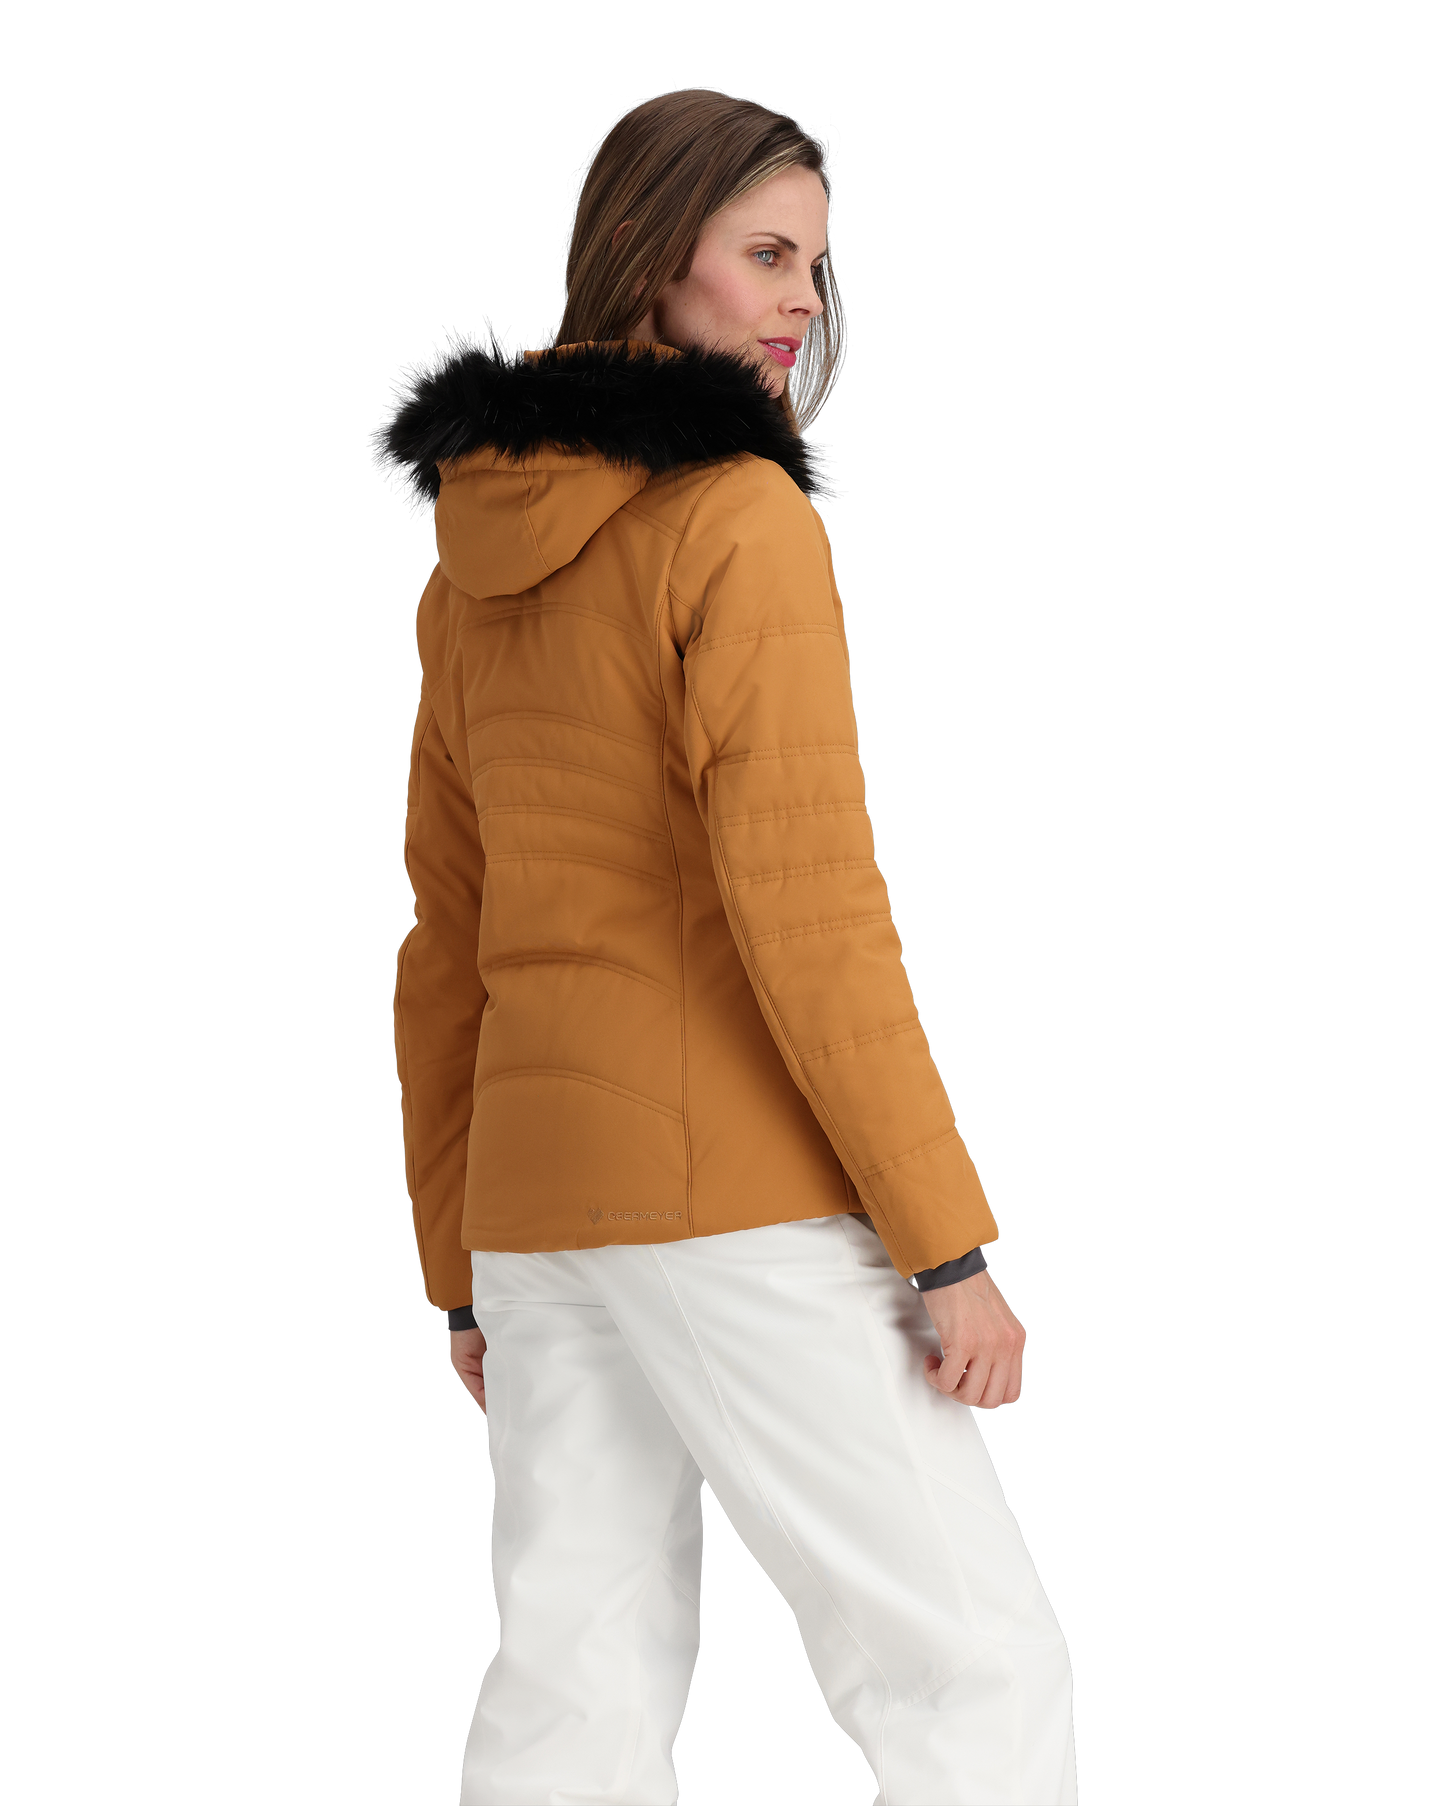 Obermeyer Tuscany II Jacket - Women's